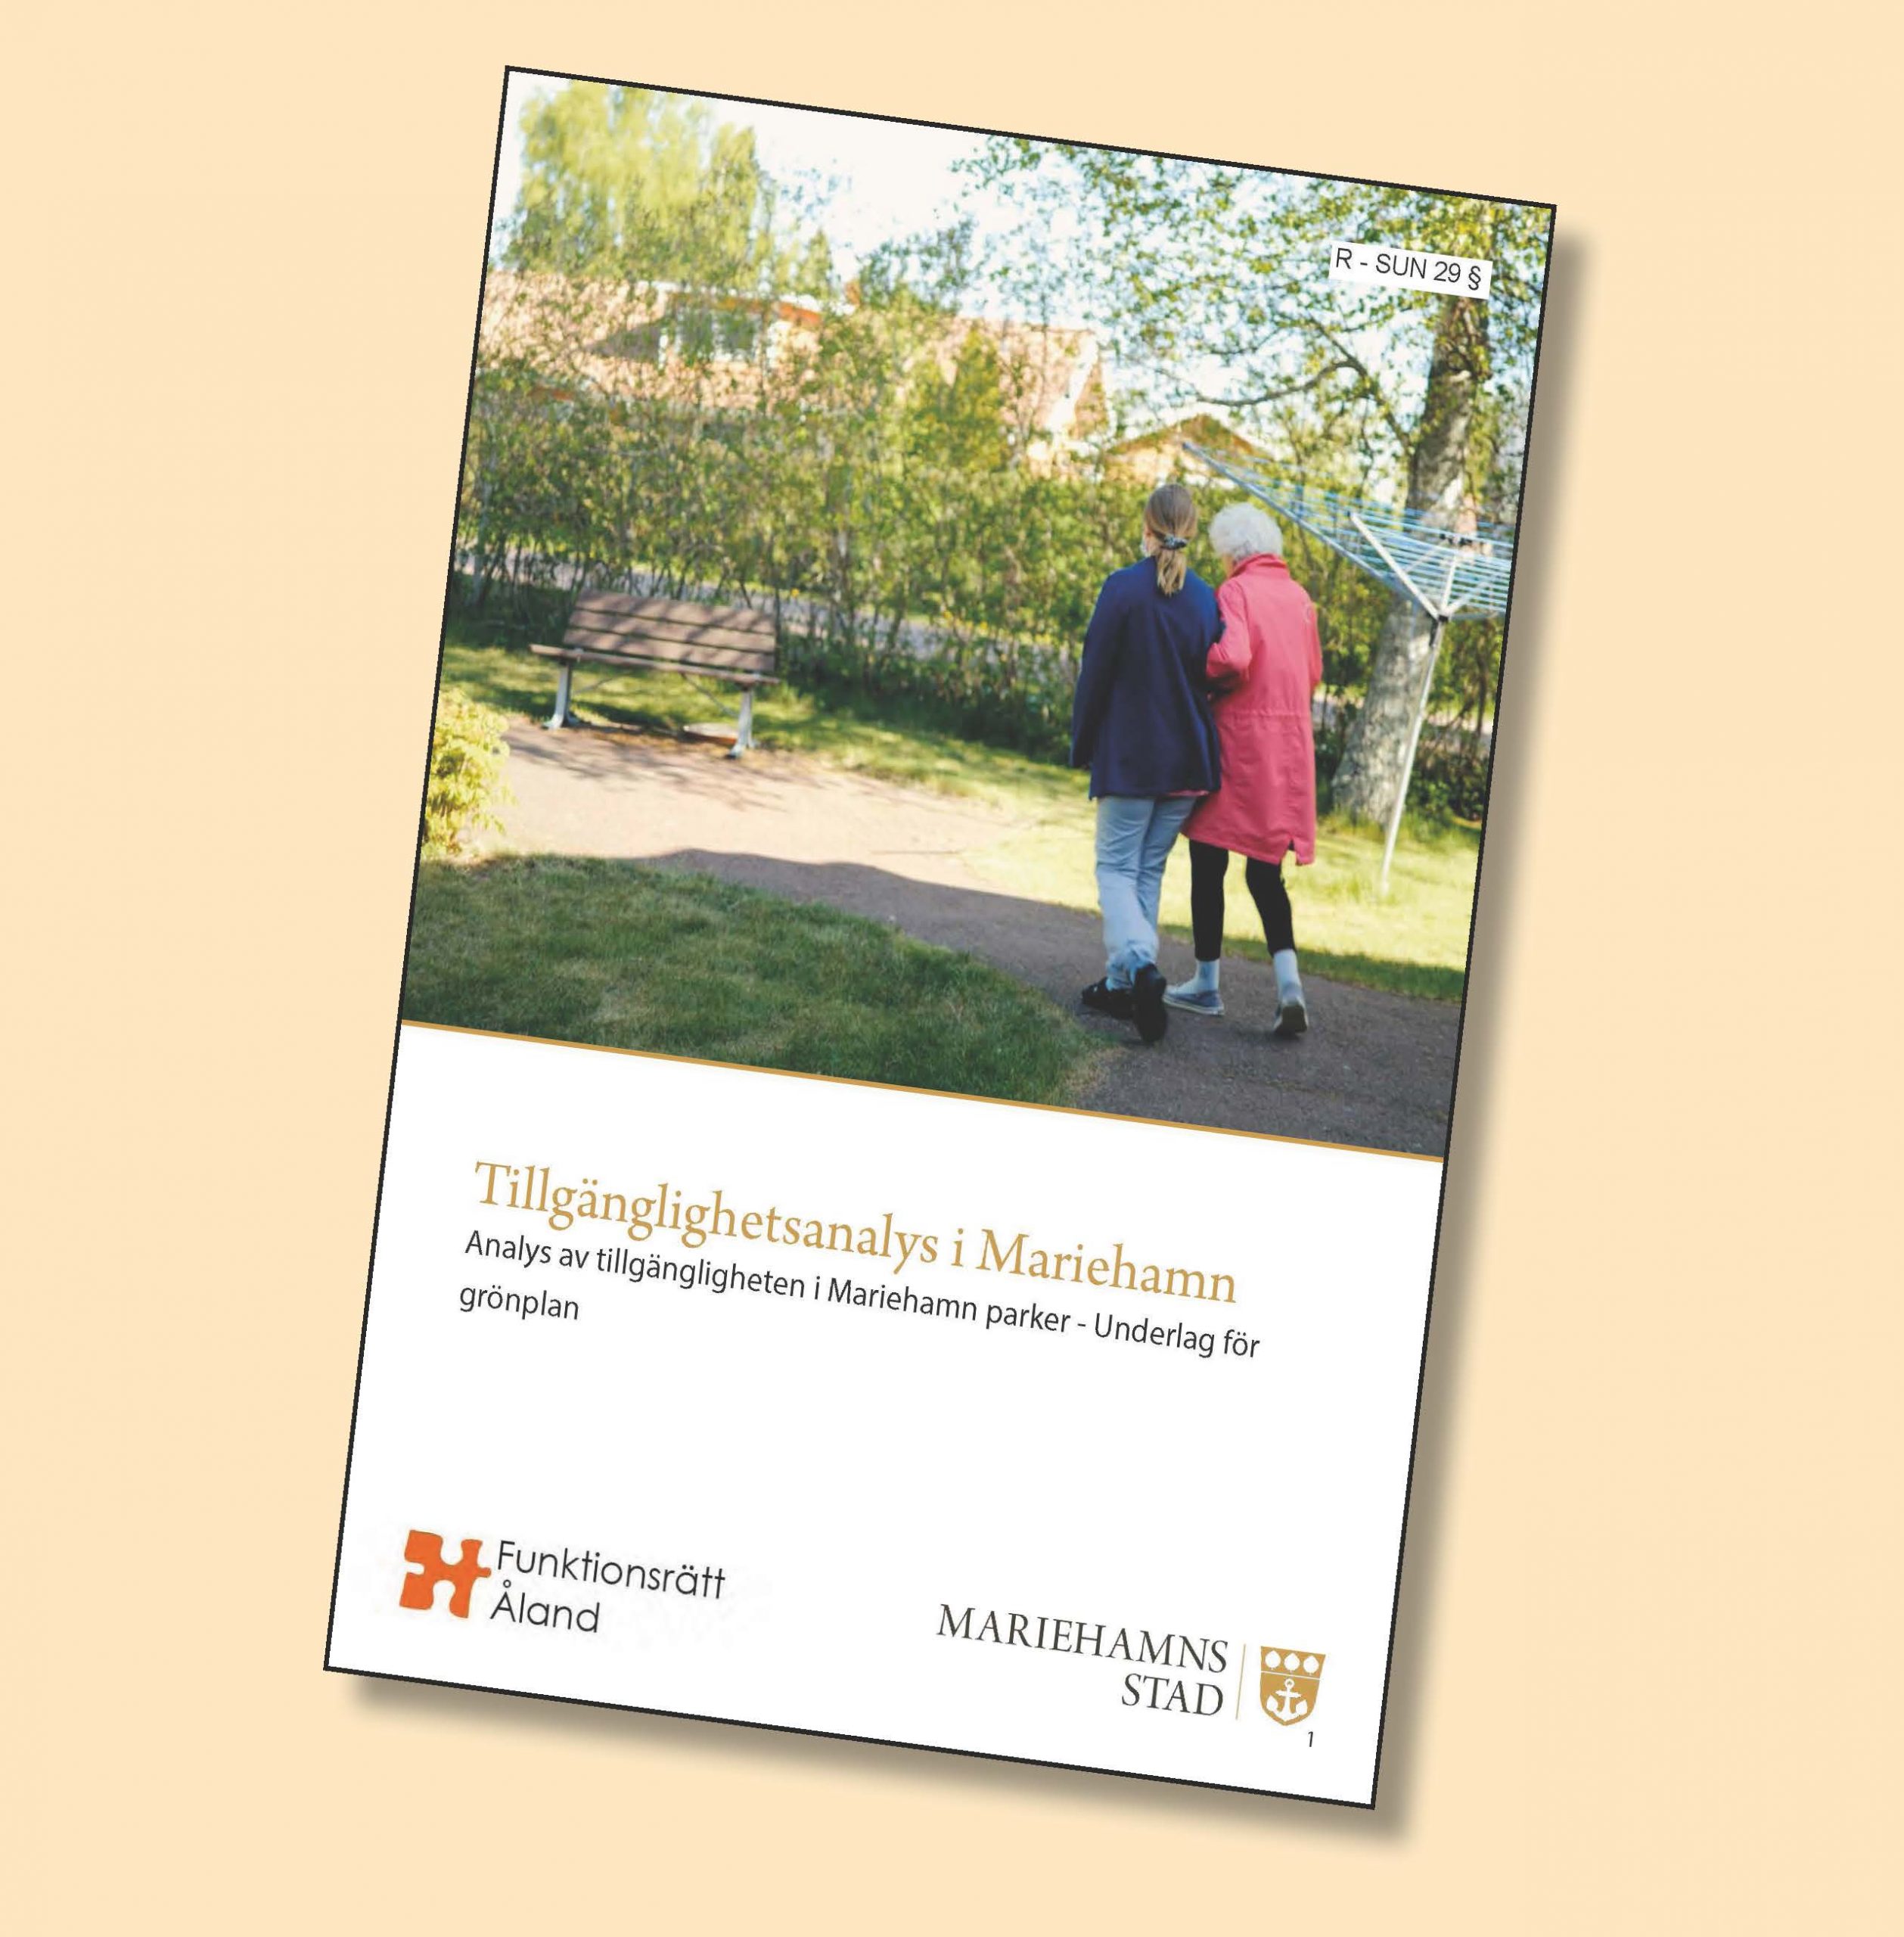 Bild av tillgänglgihetsanalysens framsida där det står "Tillgänglighetsanalys i Mariehamn" samt är ett foto på en äldre och yngre persone som promenerar i en park.